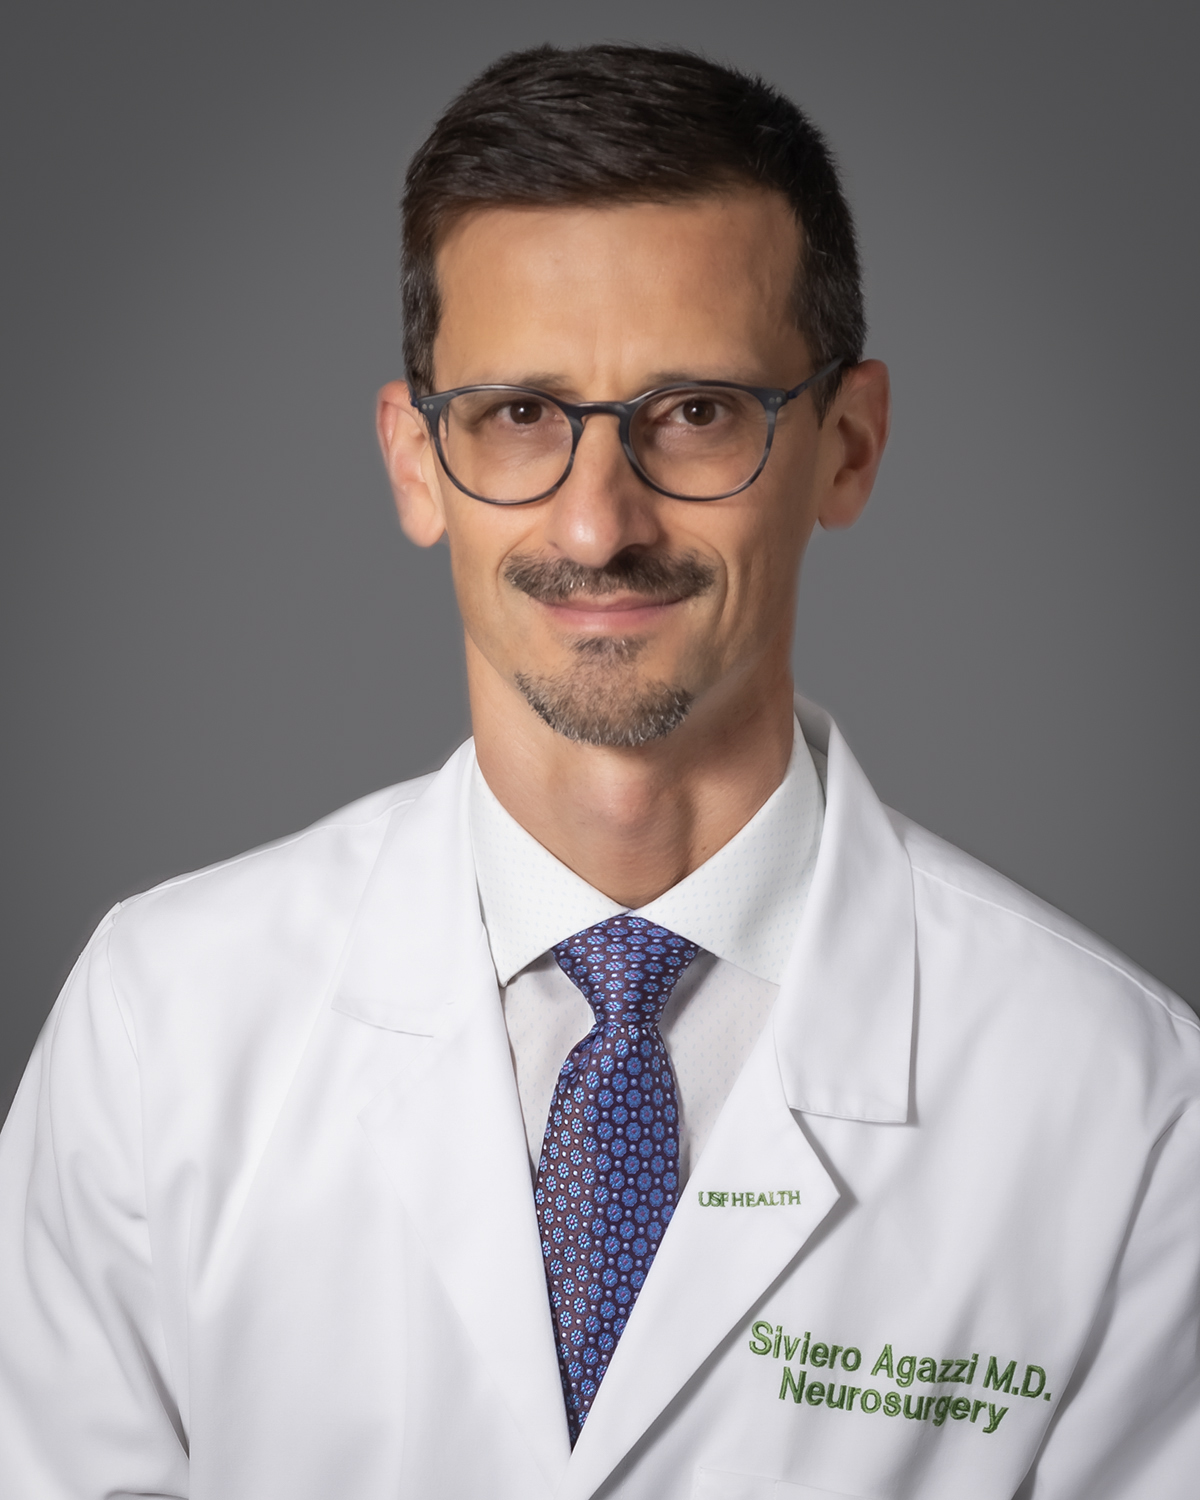 Picture of Dr. Siviero Agazzi